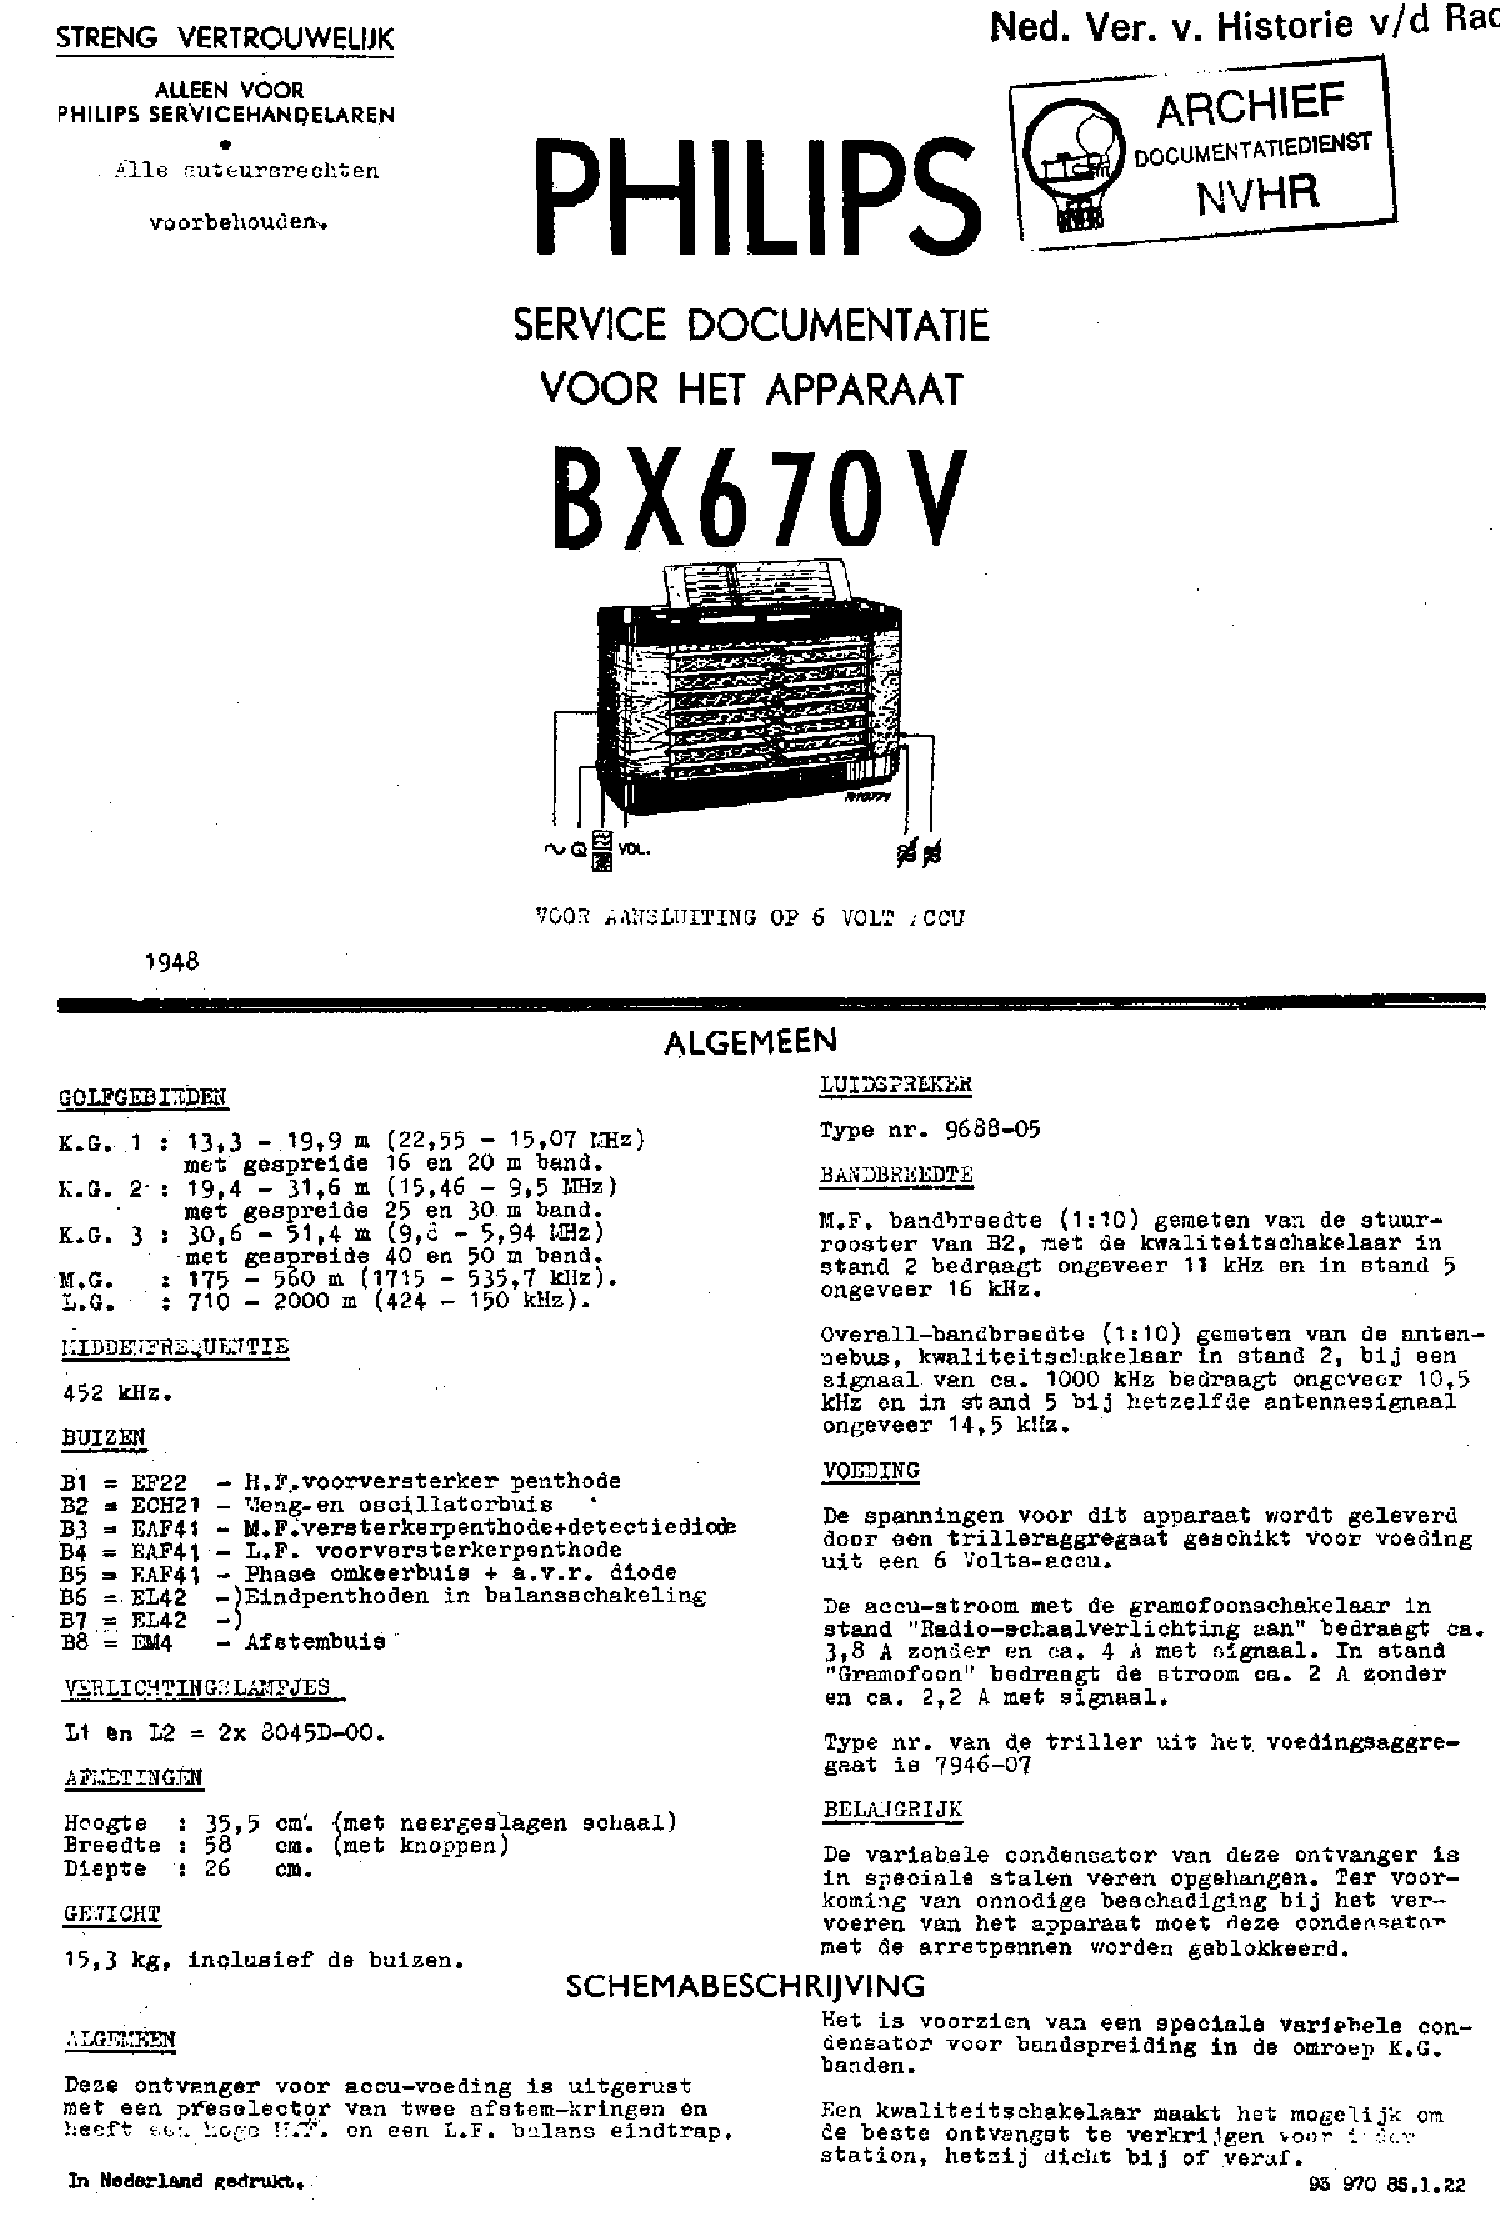 PHILIPS BX670V 6V-AKKU RECEIVER 1948 SM service manual (1st page)